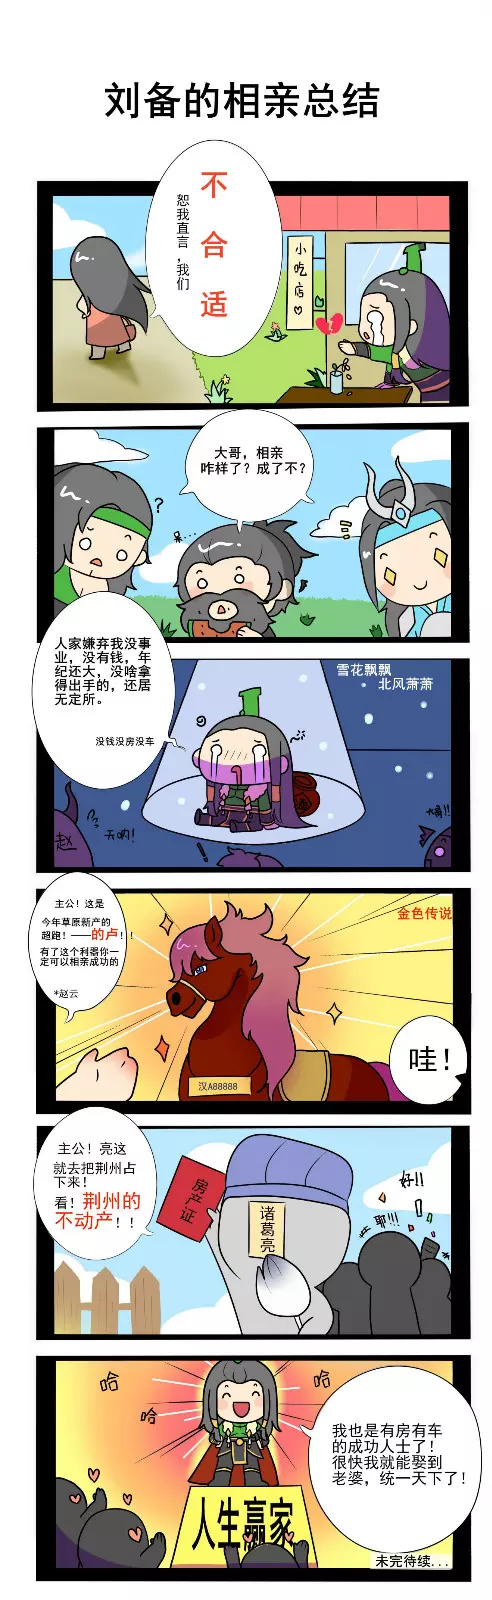 《少年三国志：零》小漫画第二弹! 刘备的相亲逆袭路！